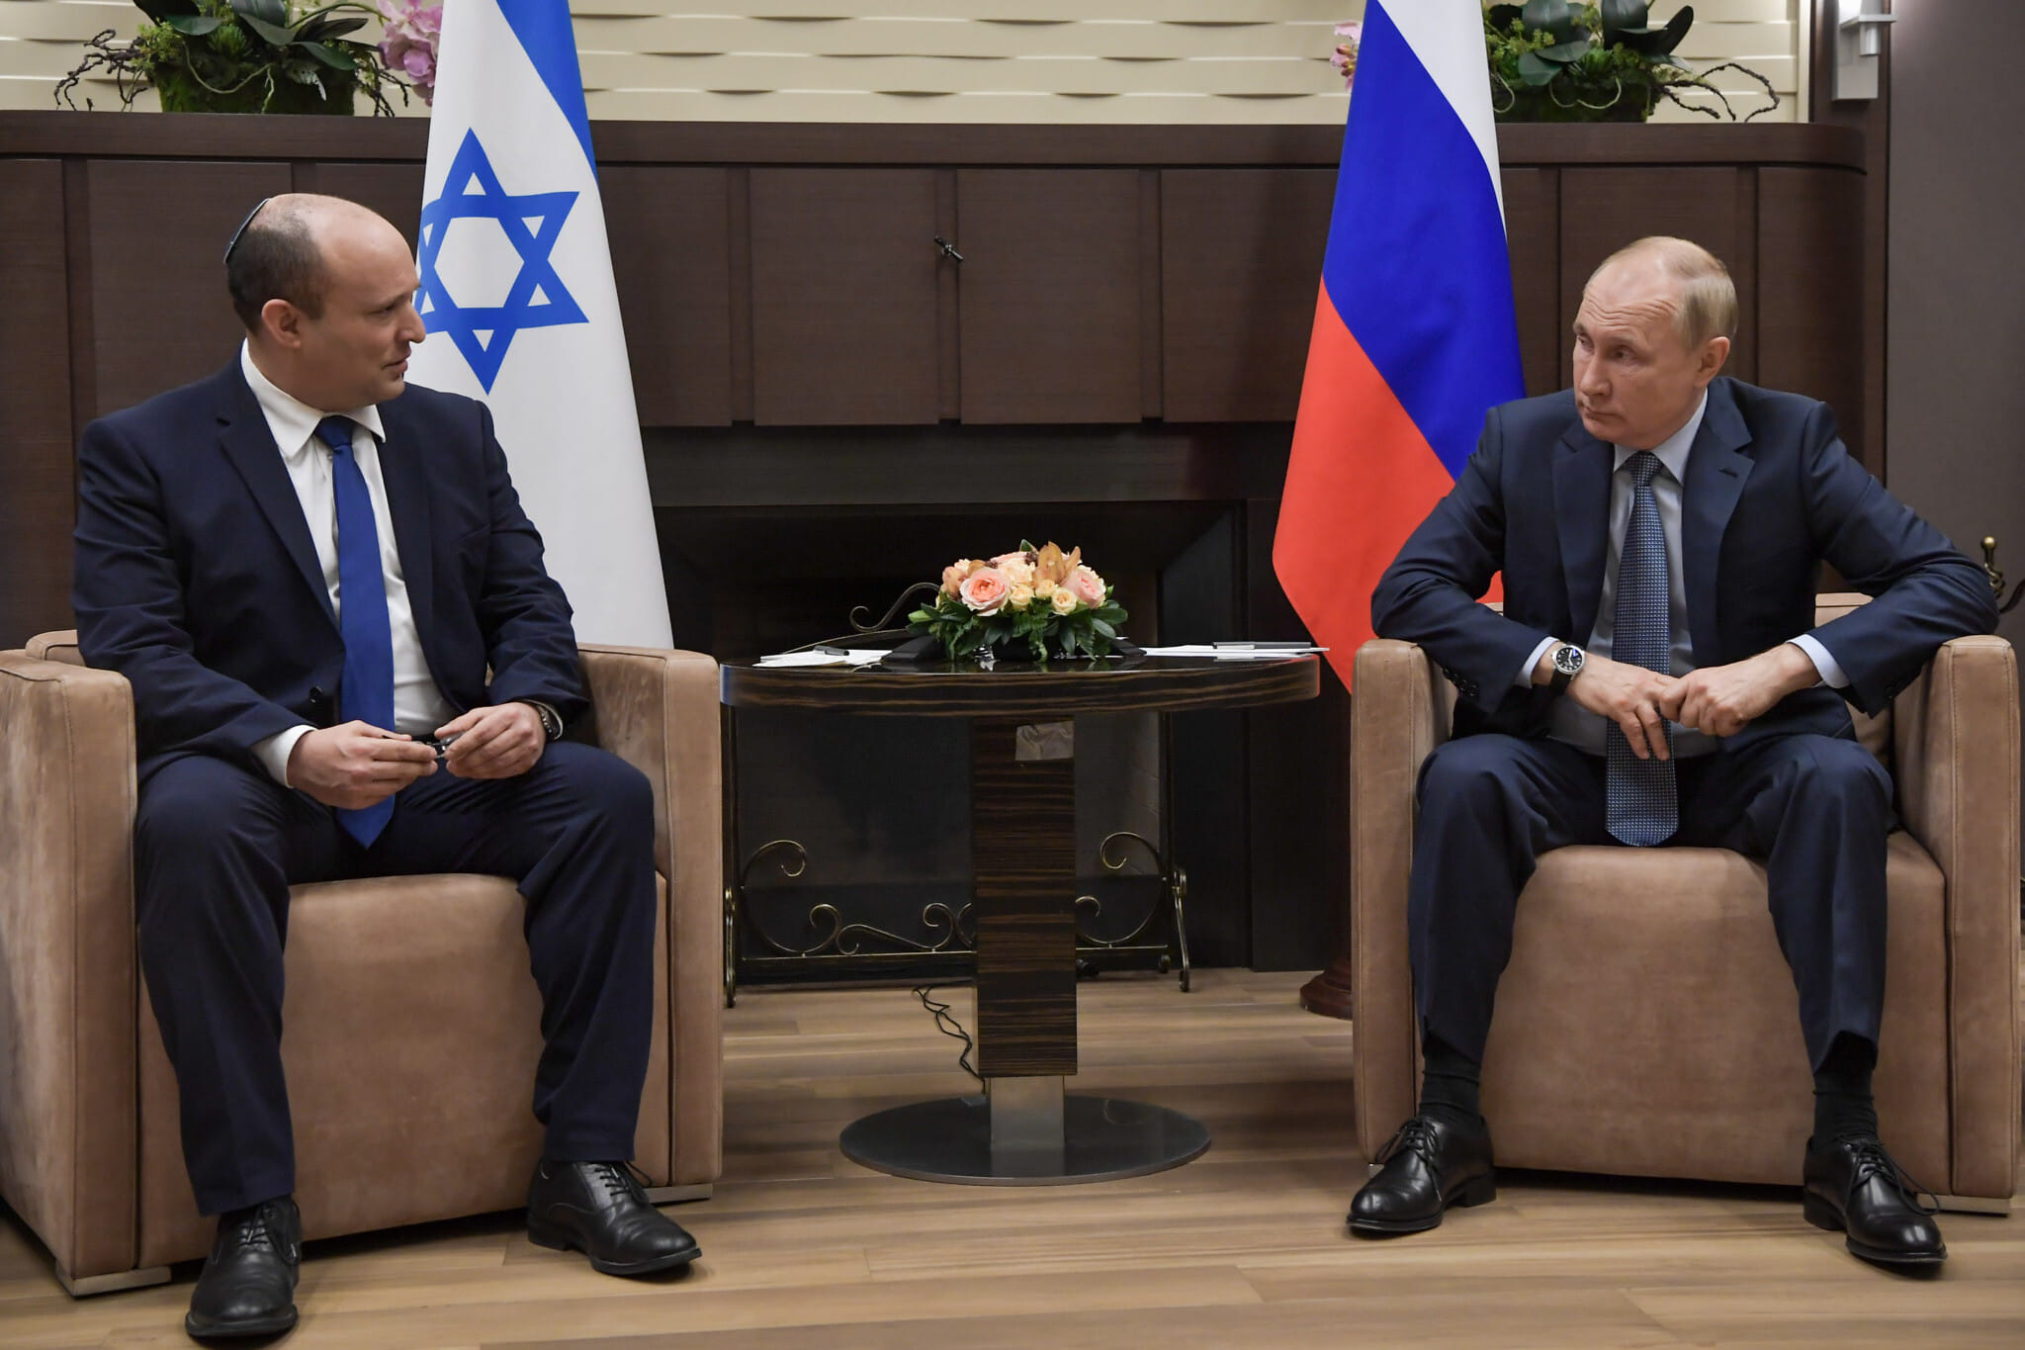 La reunión entre Bennett y Putin en Moscú termina después de 3 horas